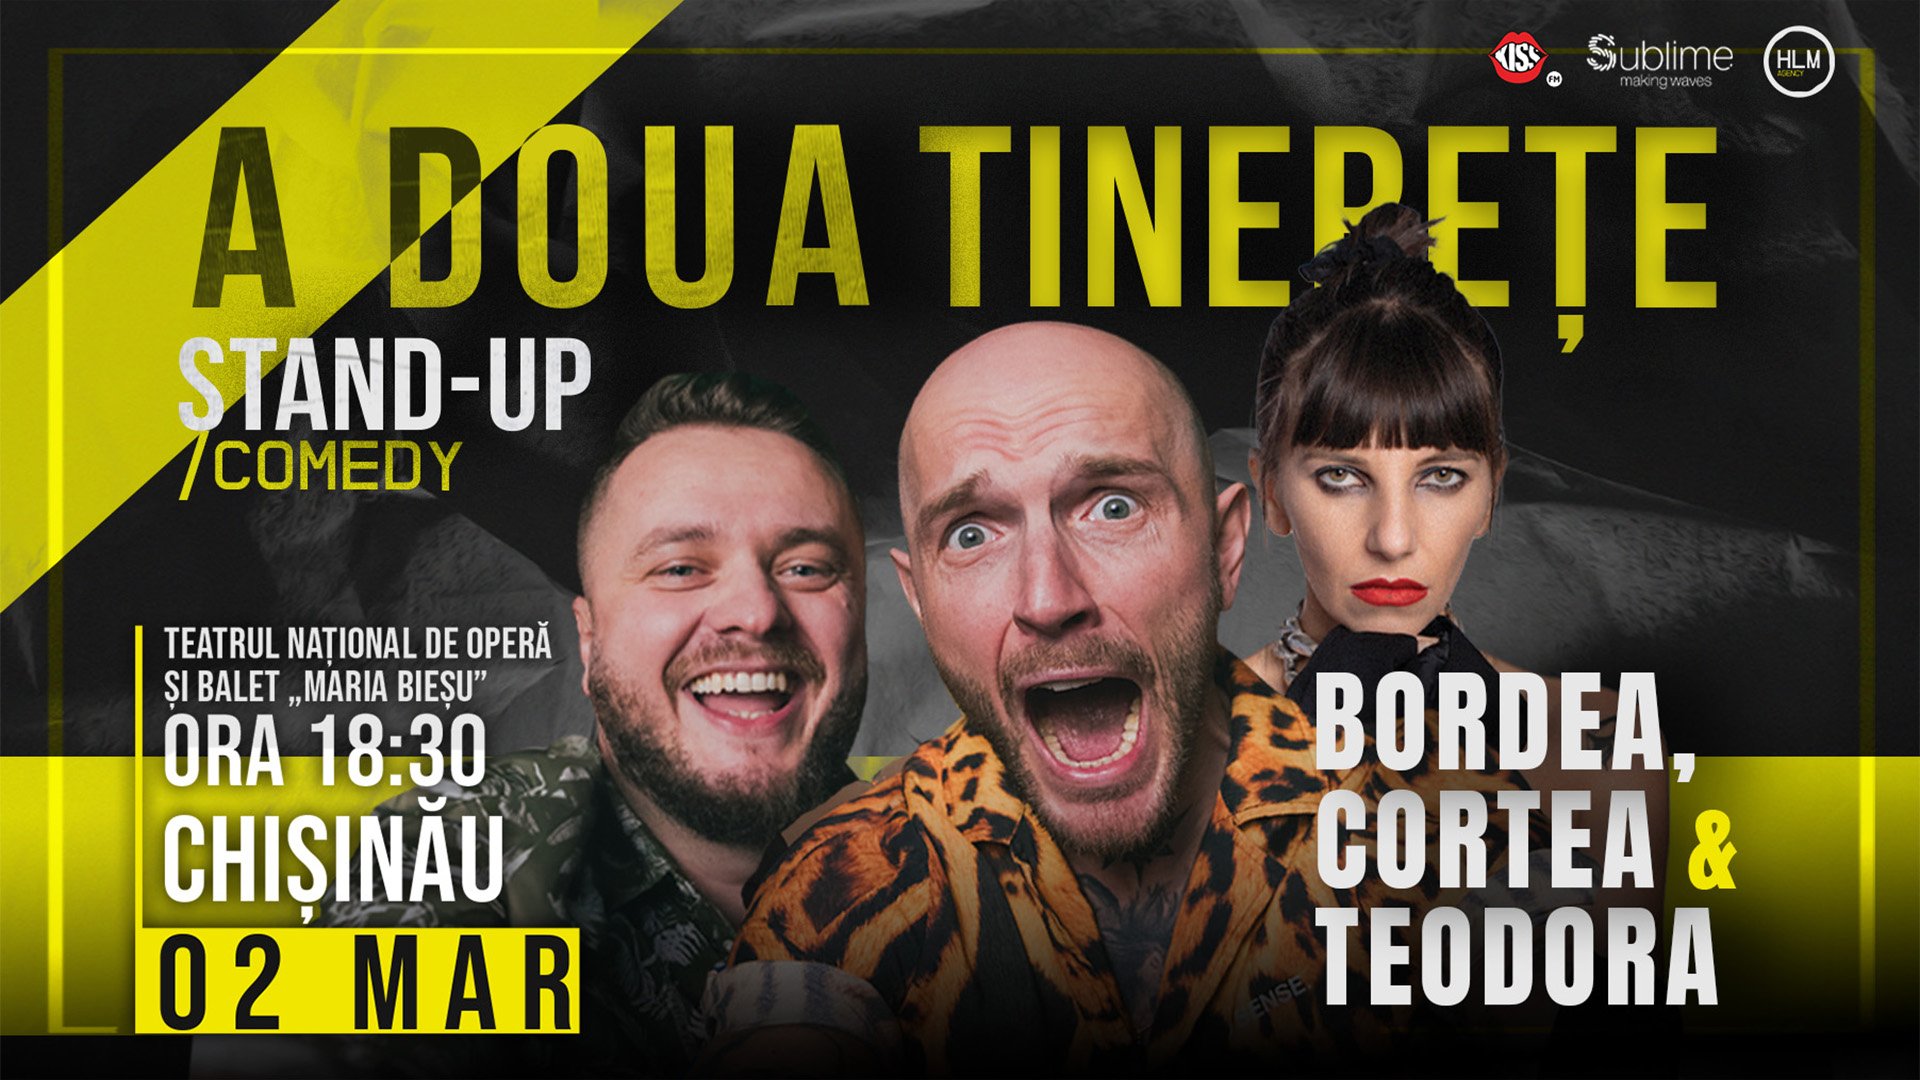 Stand-Up Comedy cu Bordea, Cortea și Teodora Nedelcu - A DOUA TINERETE